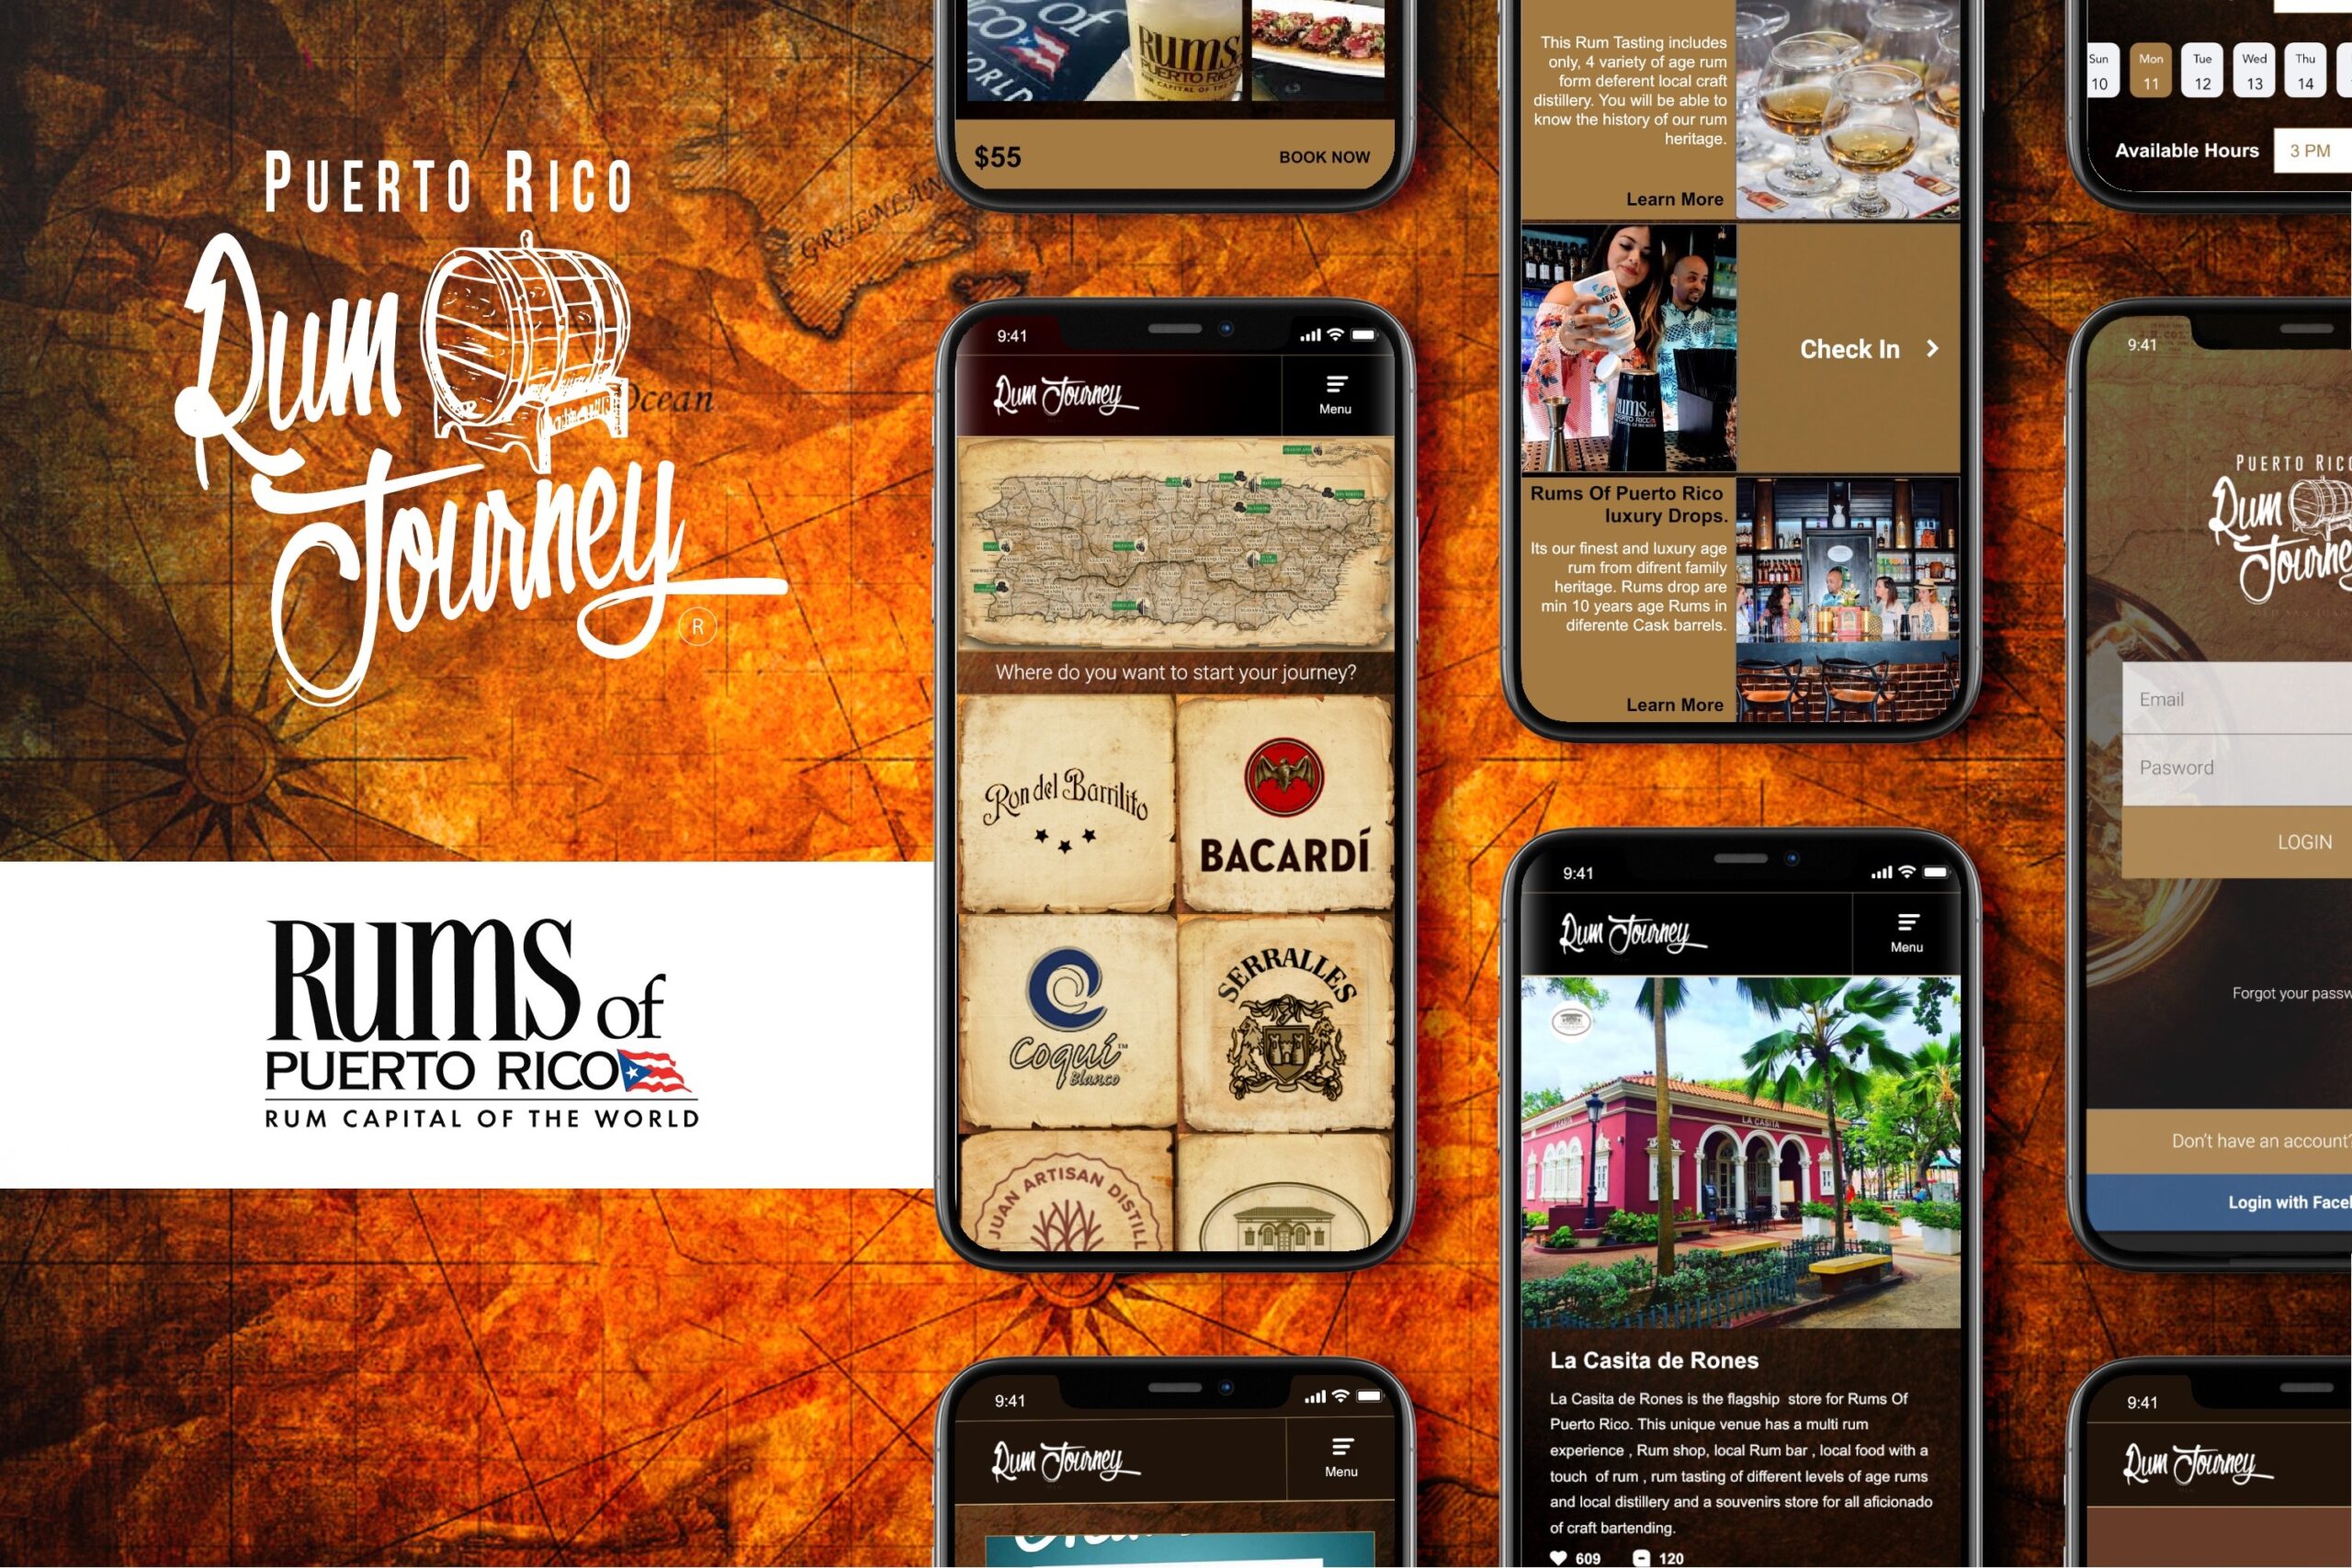 Presentan plataforma digital “Puerto Rico Rum Journey” para promocionar destilerías puertorriqueñas